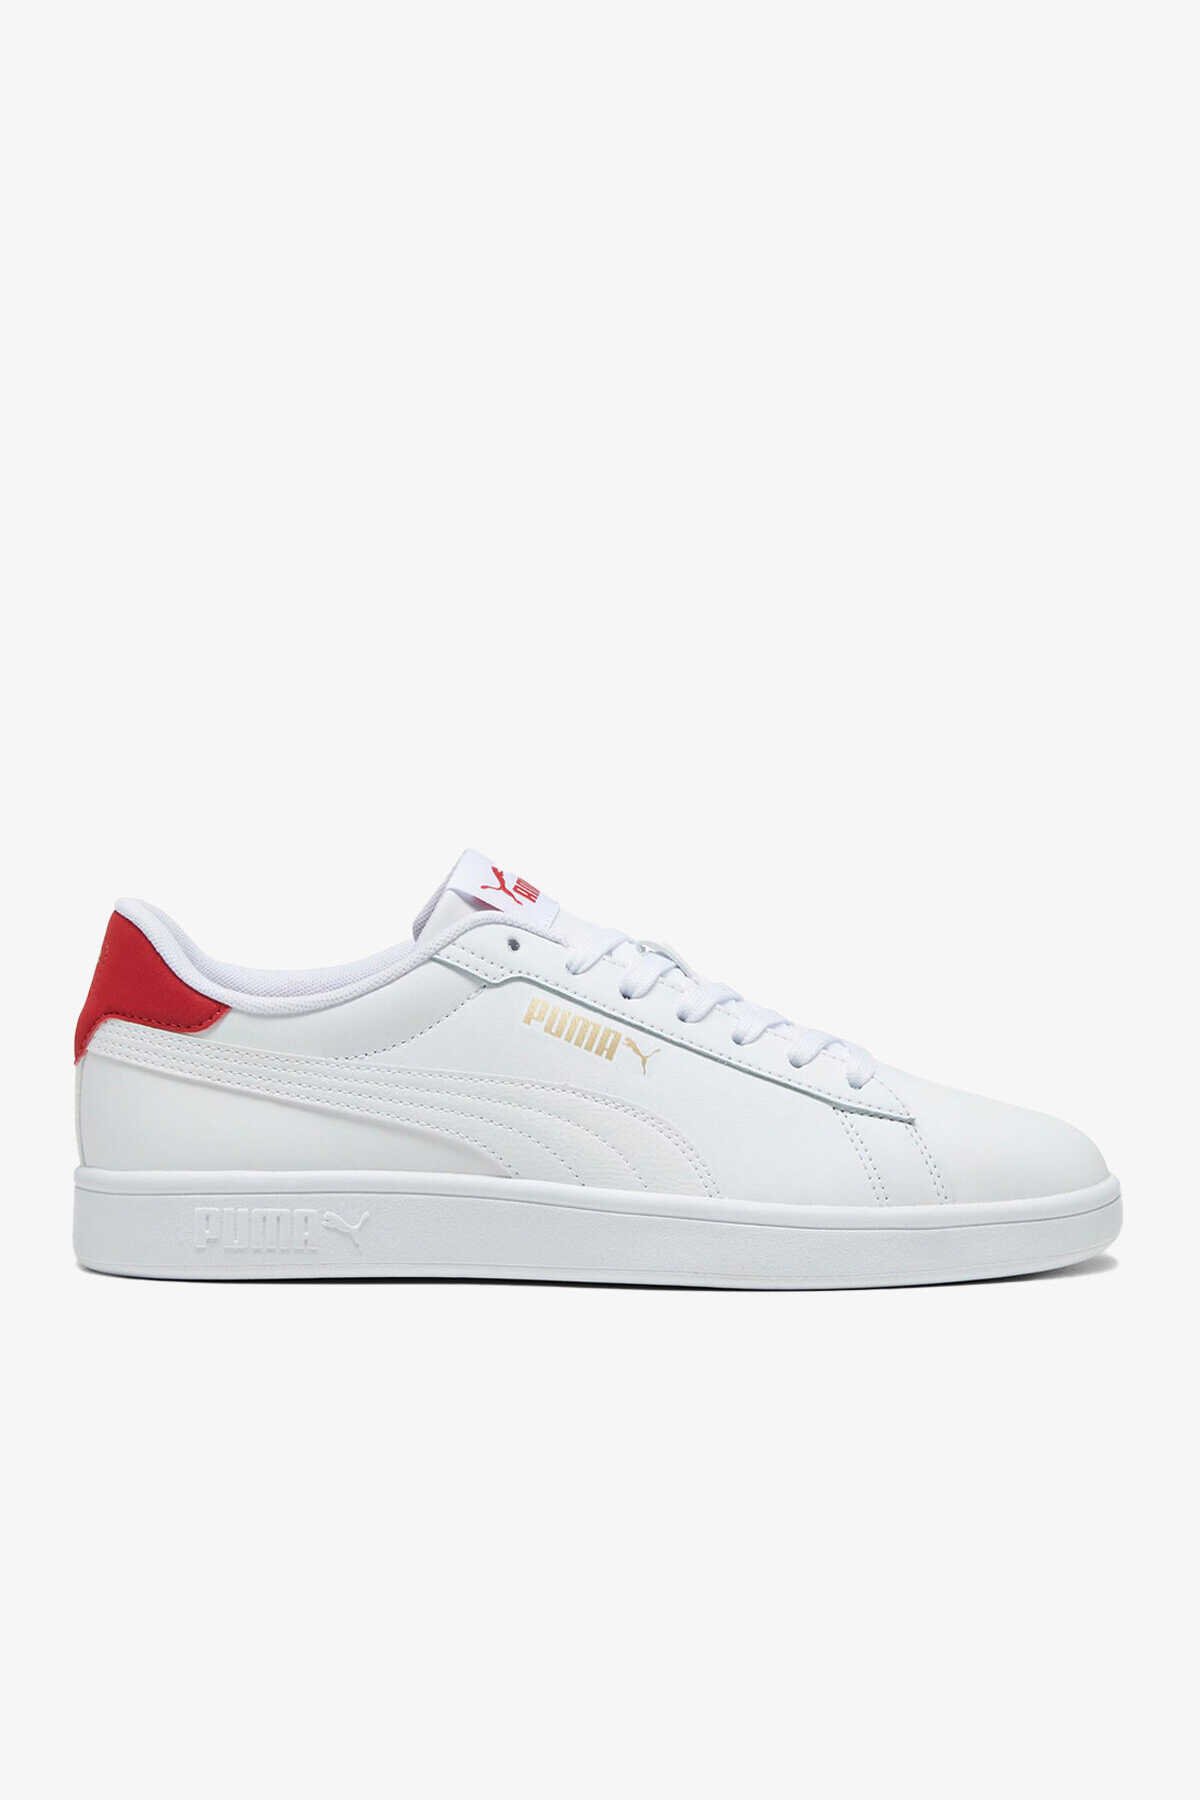 Puma - Puma Smash 3.0 L Erkek Sneaker Ayakkabı Beyaz / Kırmızı